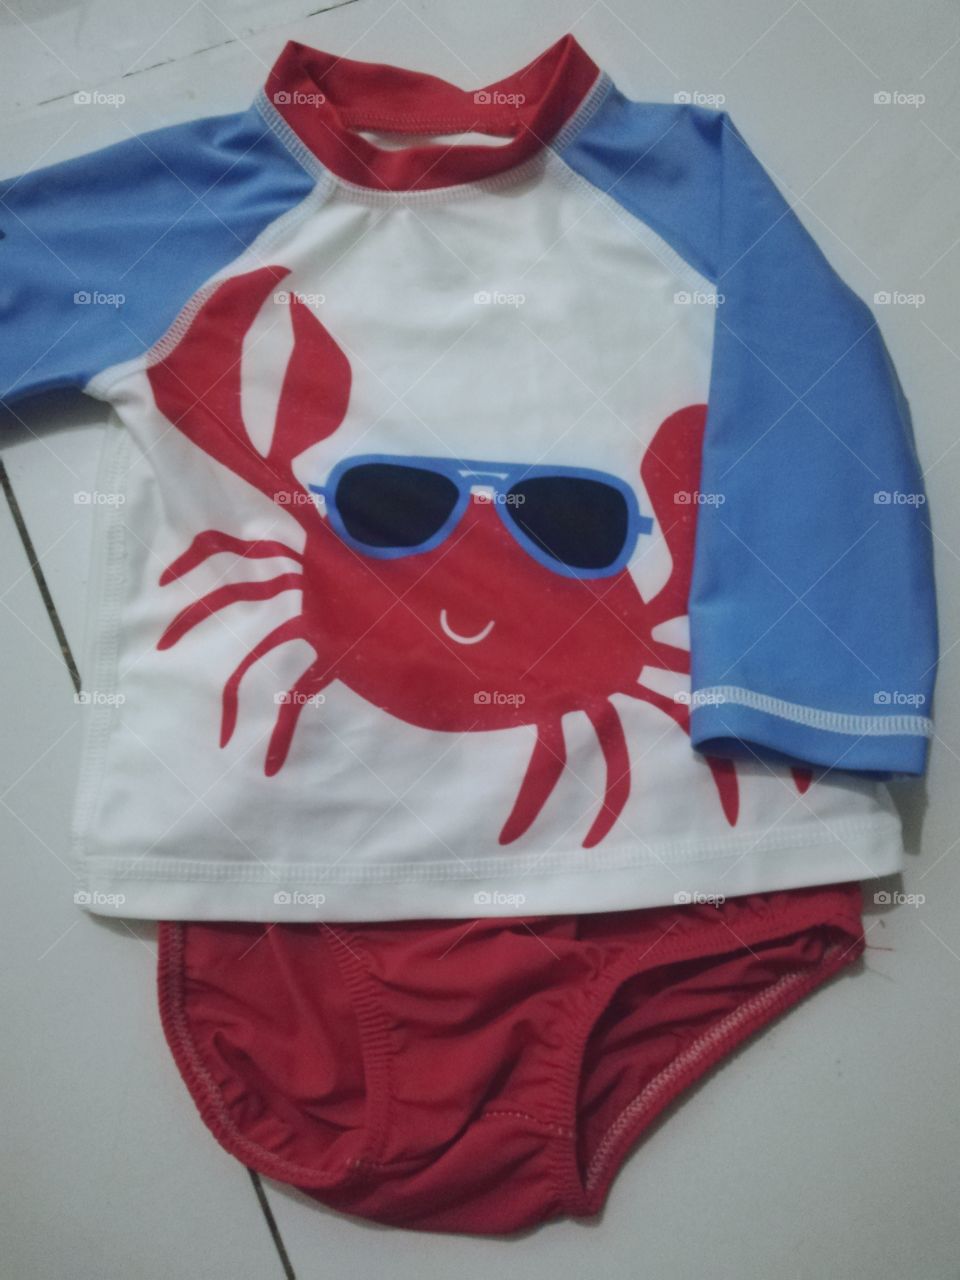 My son's ready for the beach!